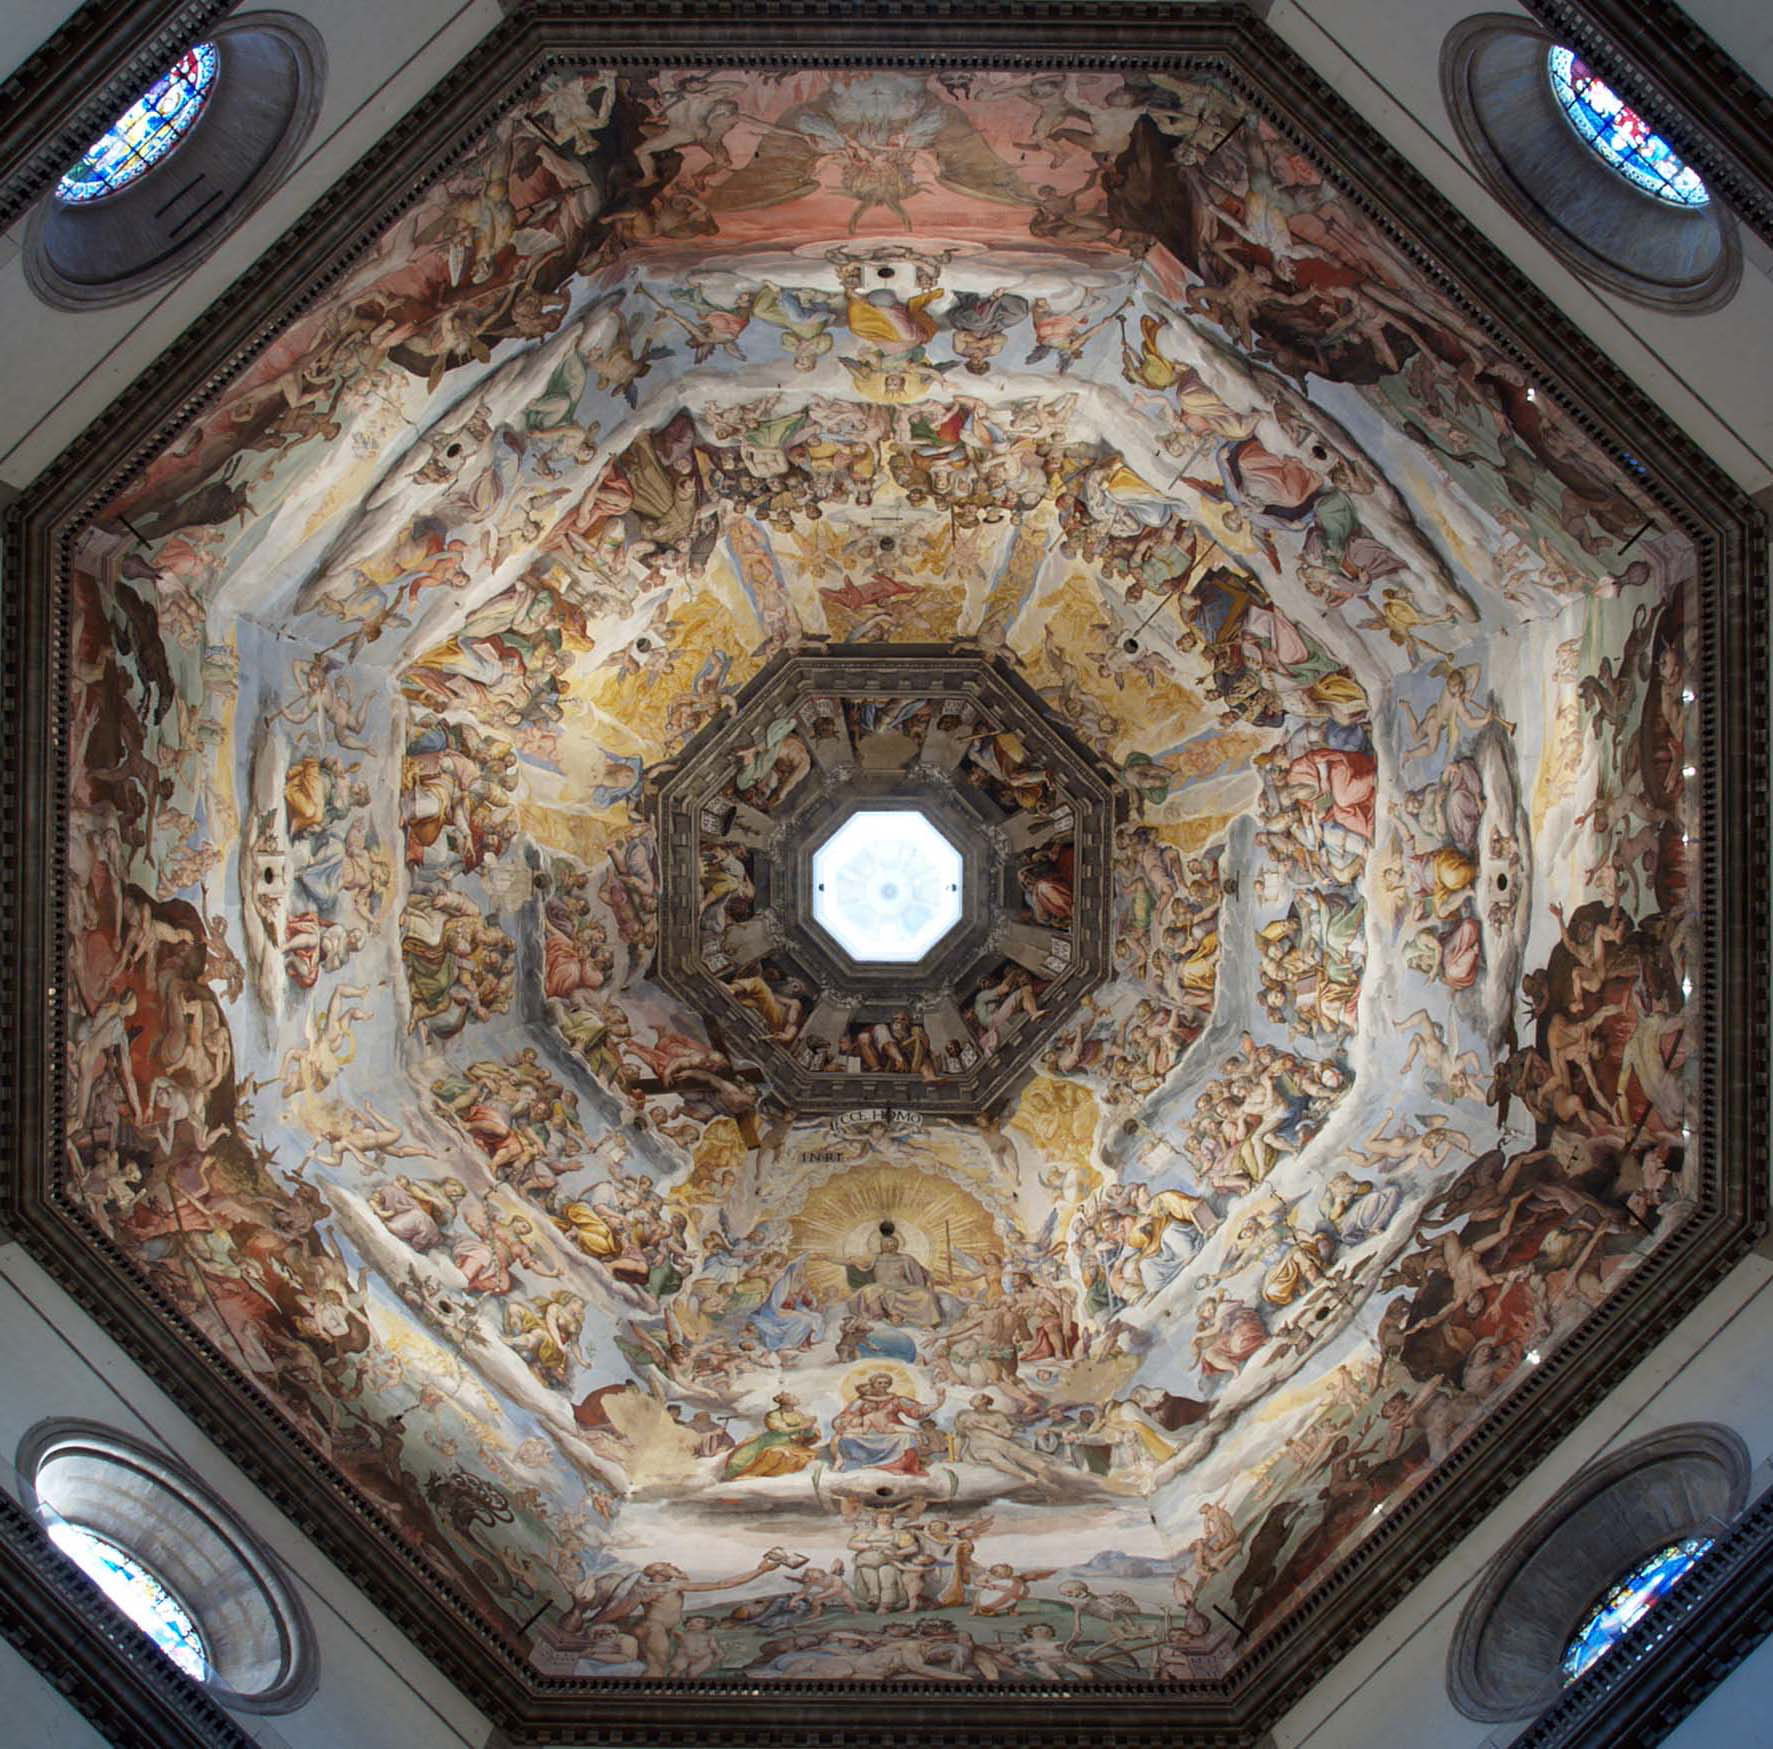 Frescoed vault of Brunelleschi's dome